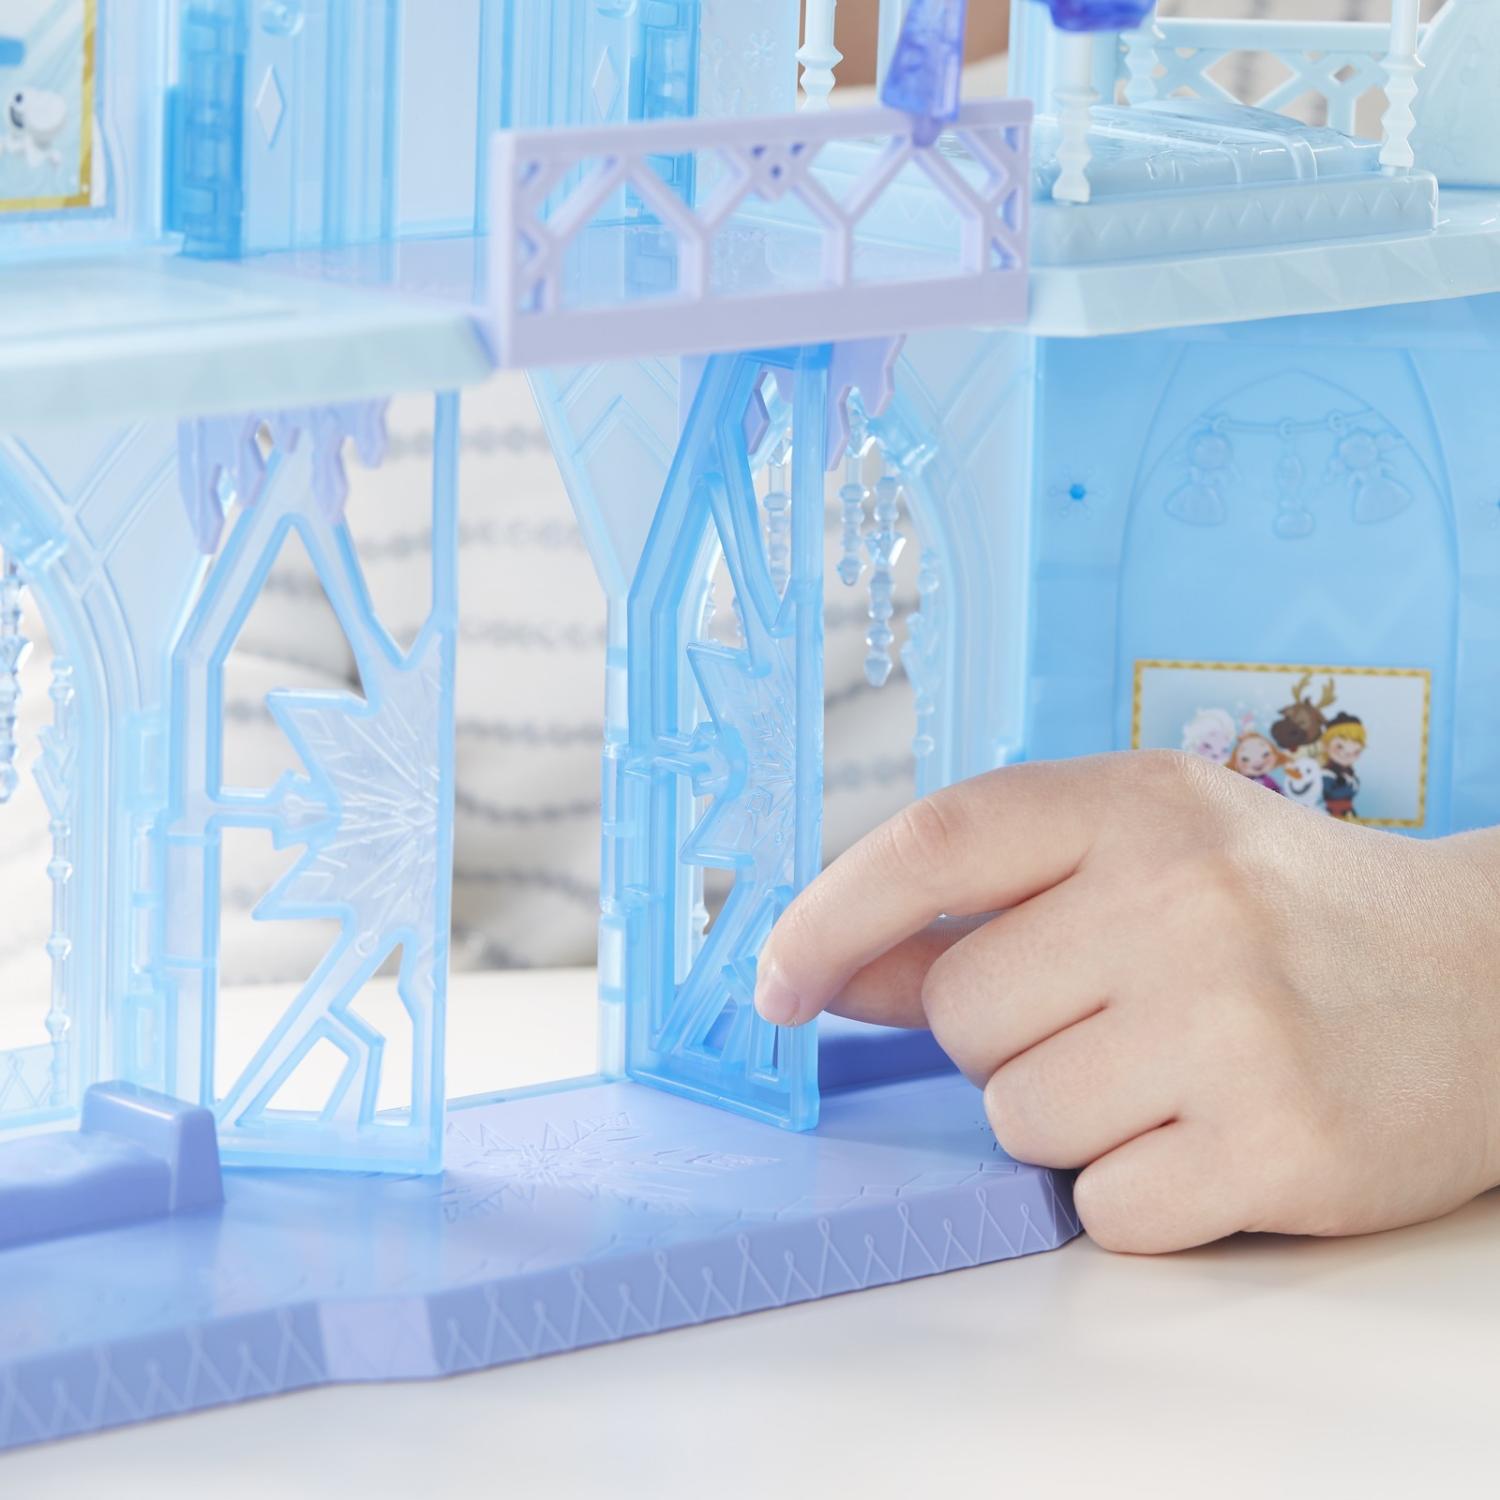 Игровой набор дворец Эльзы из серии Disney Princess. Холодное Сердце  